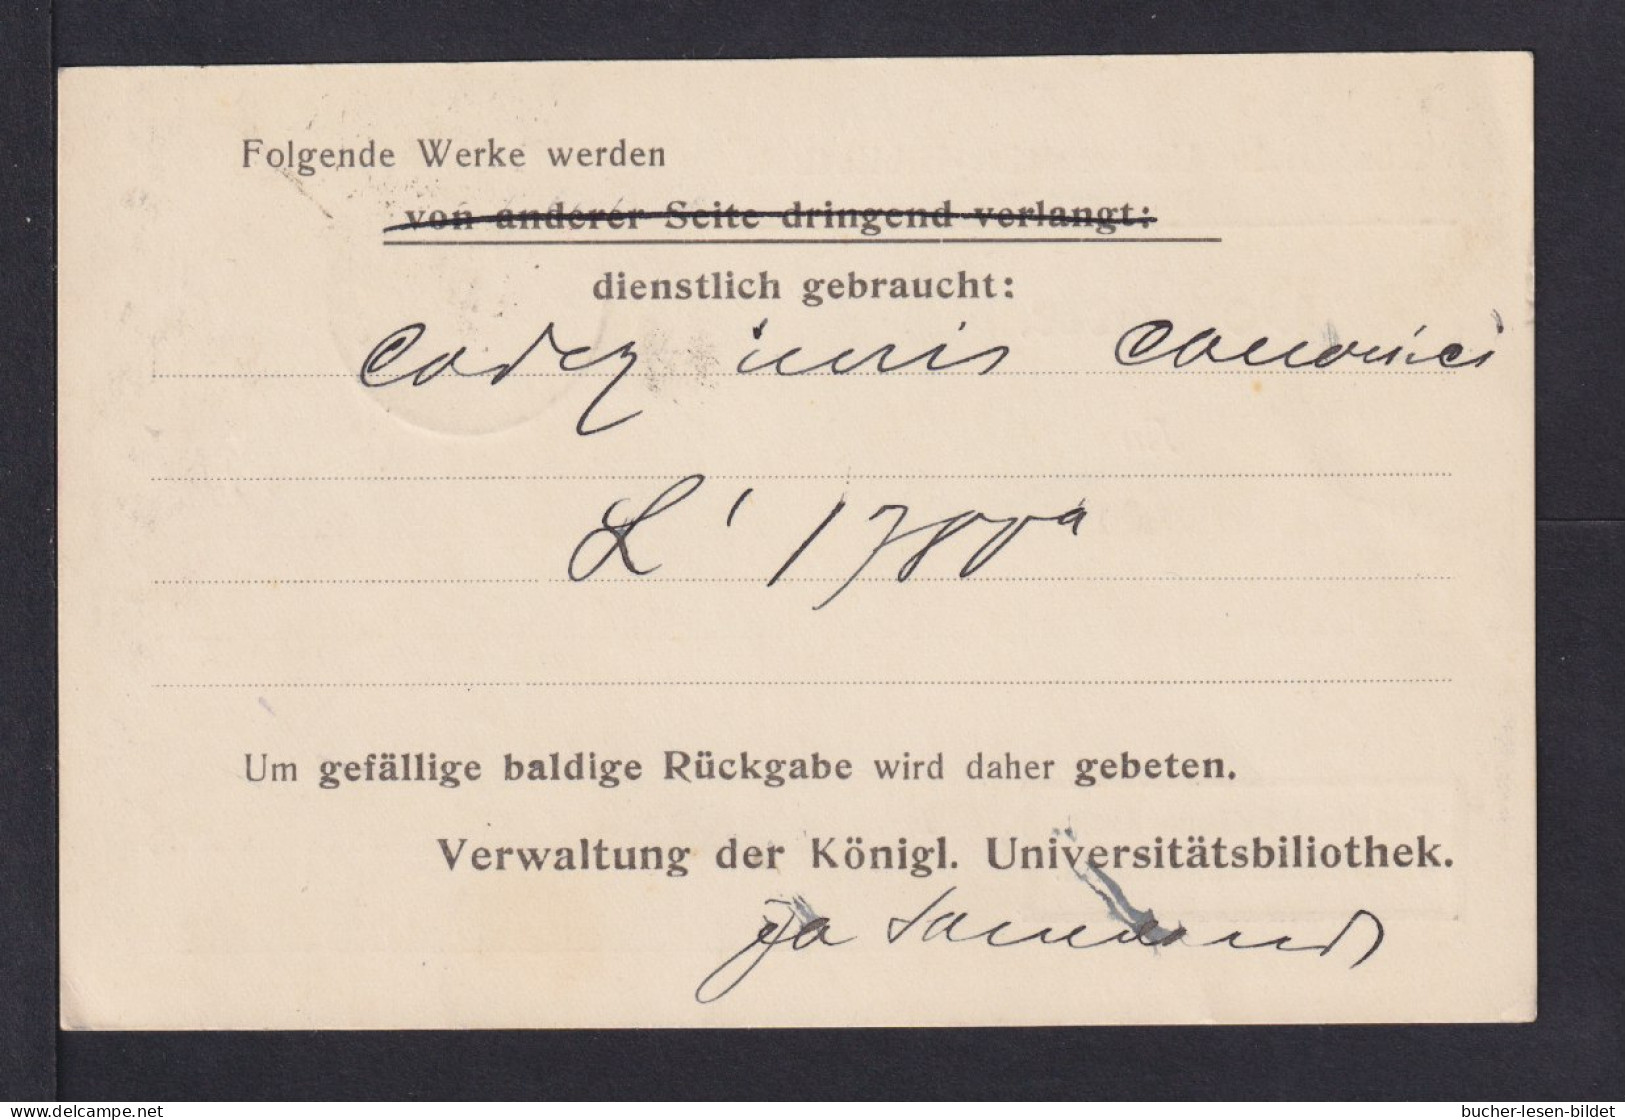 BILDUNG - 1919 - Protofreie Dienstkarte "Universität Münster" - Gebraucht - Natura